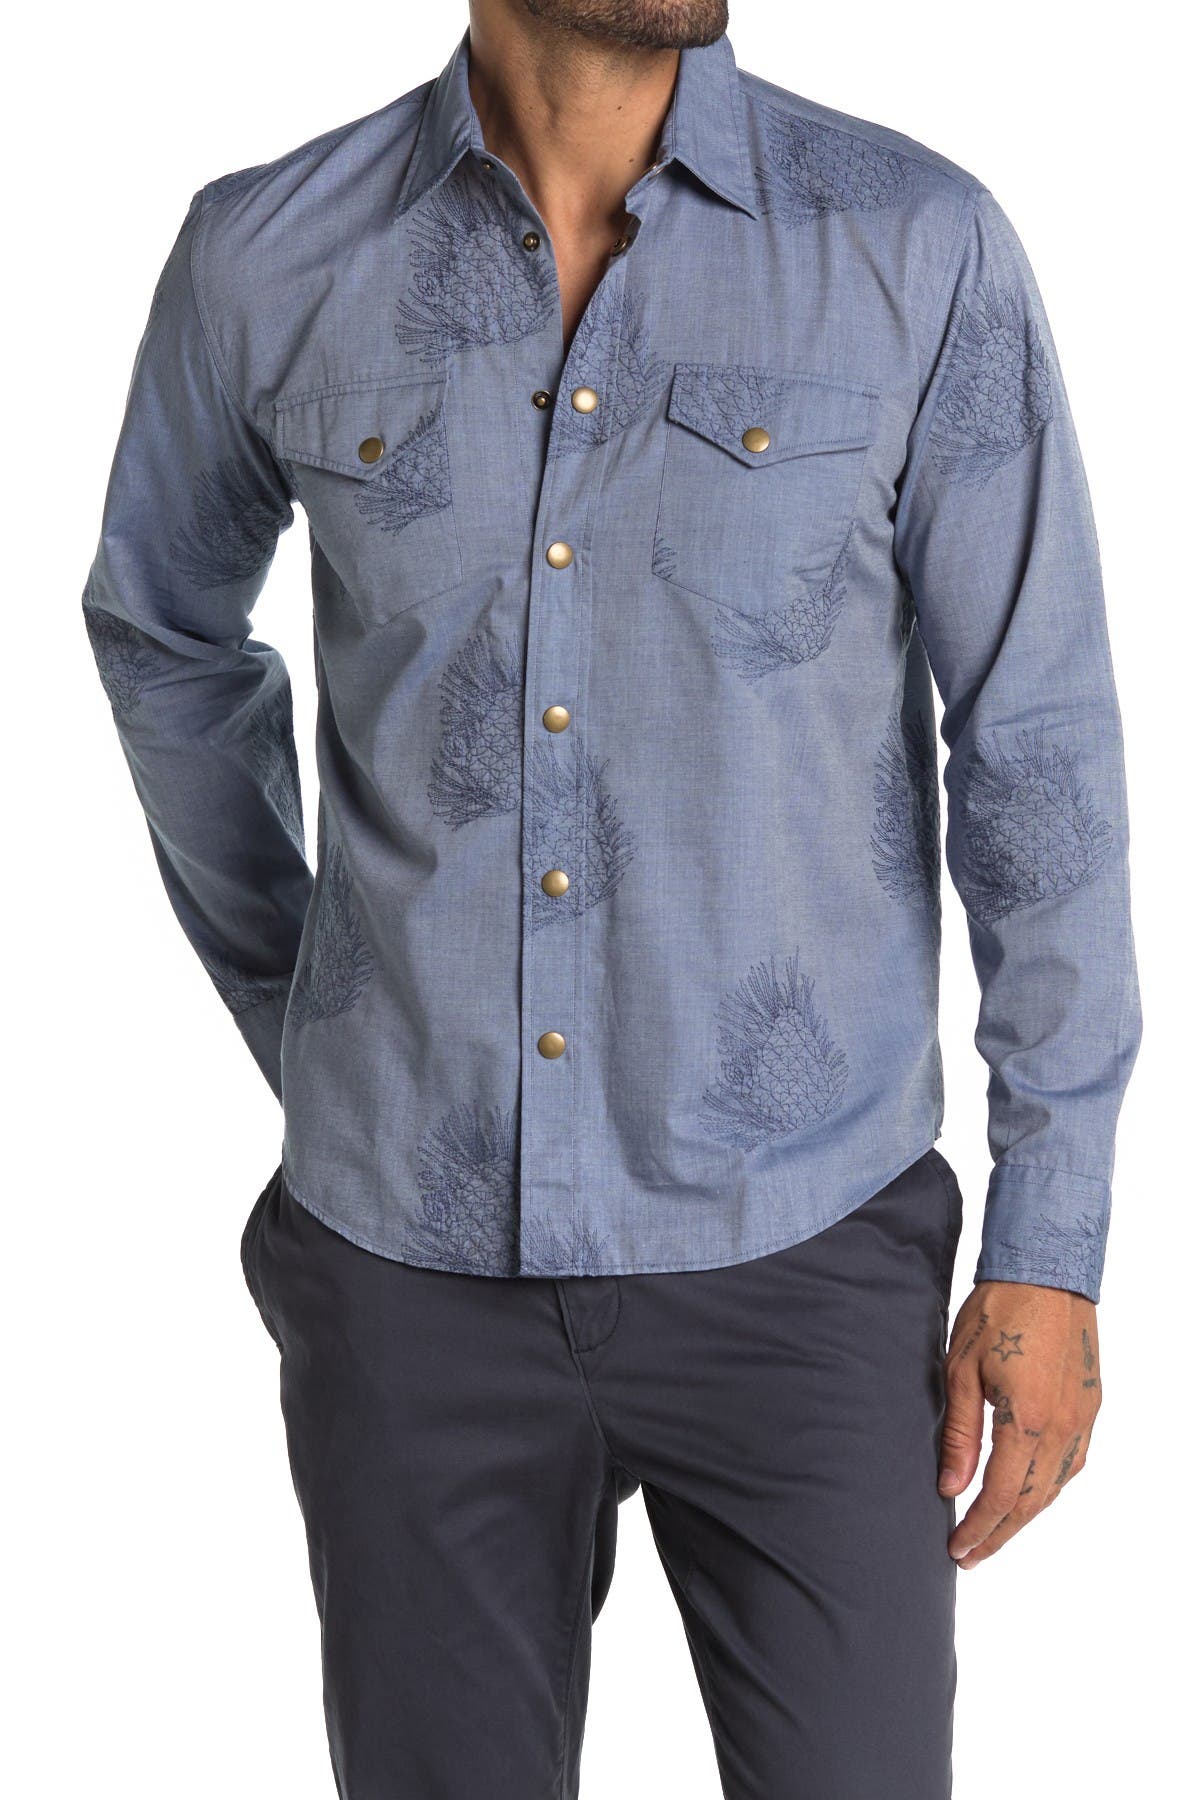 Billy Reid Mens John T Woven Button-Down Shirt